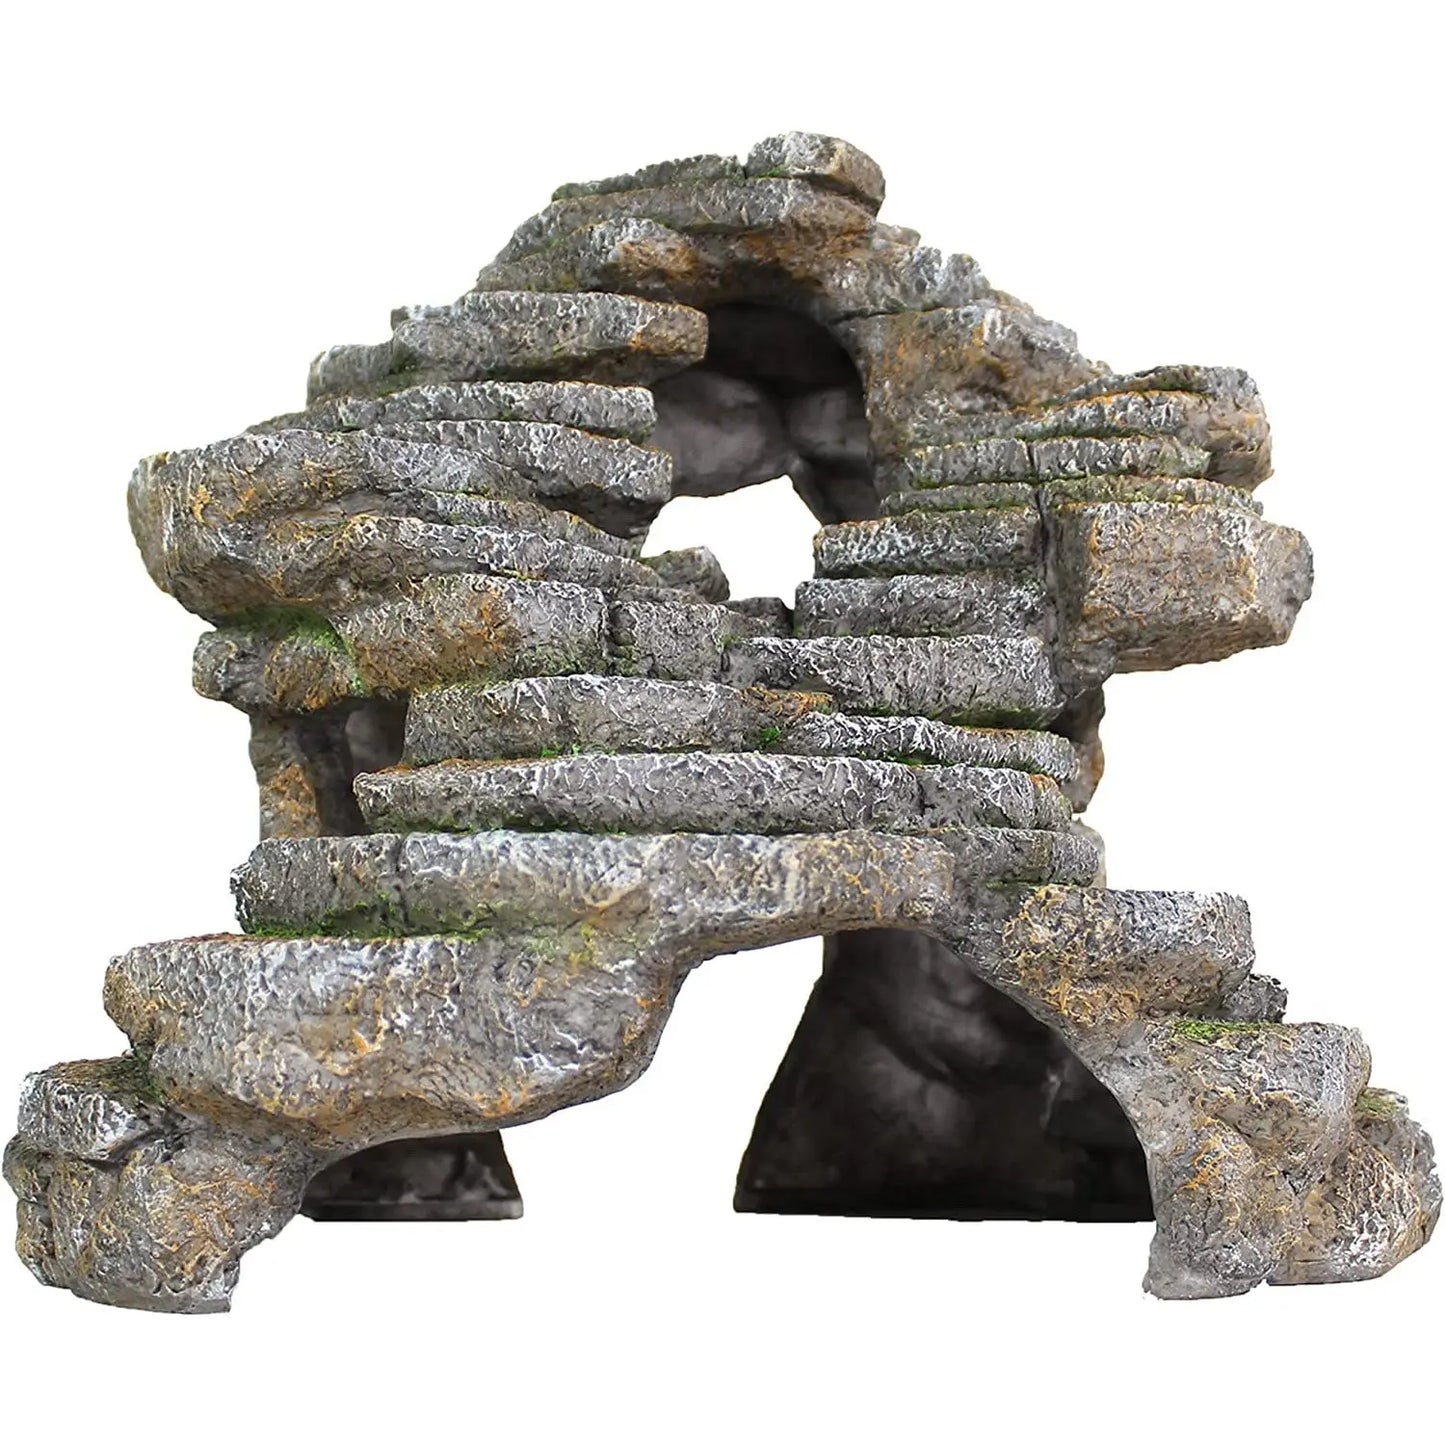 Reptology Shale Scape Step Ledge & Cave Hideout Decorative Resin for Aquariums & Terrariums Reptology